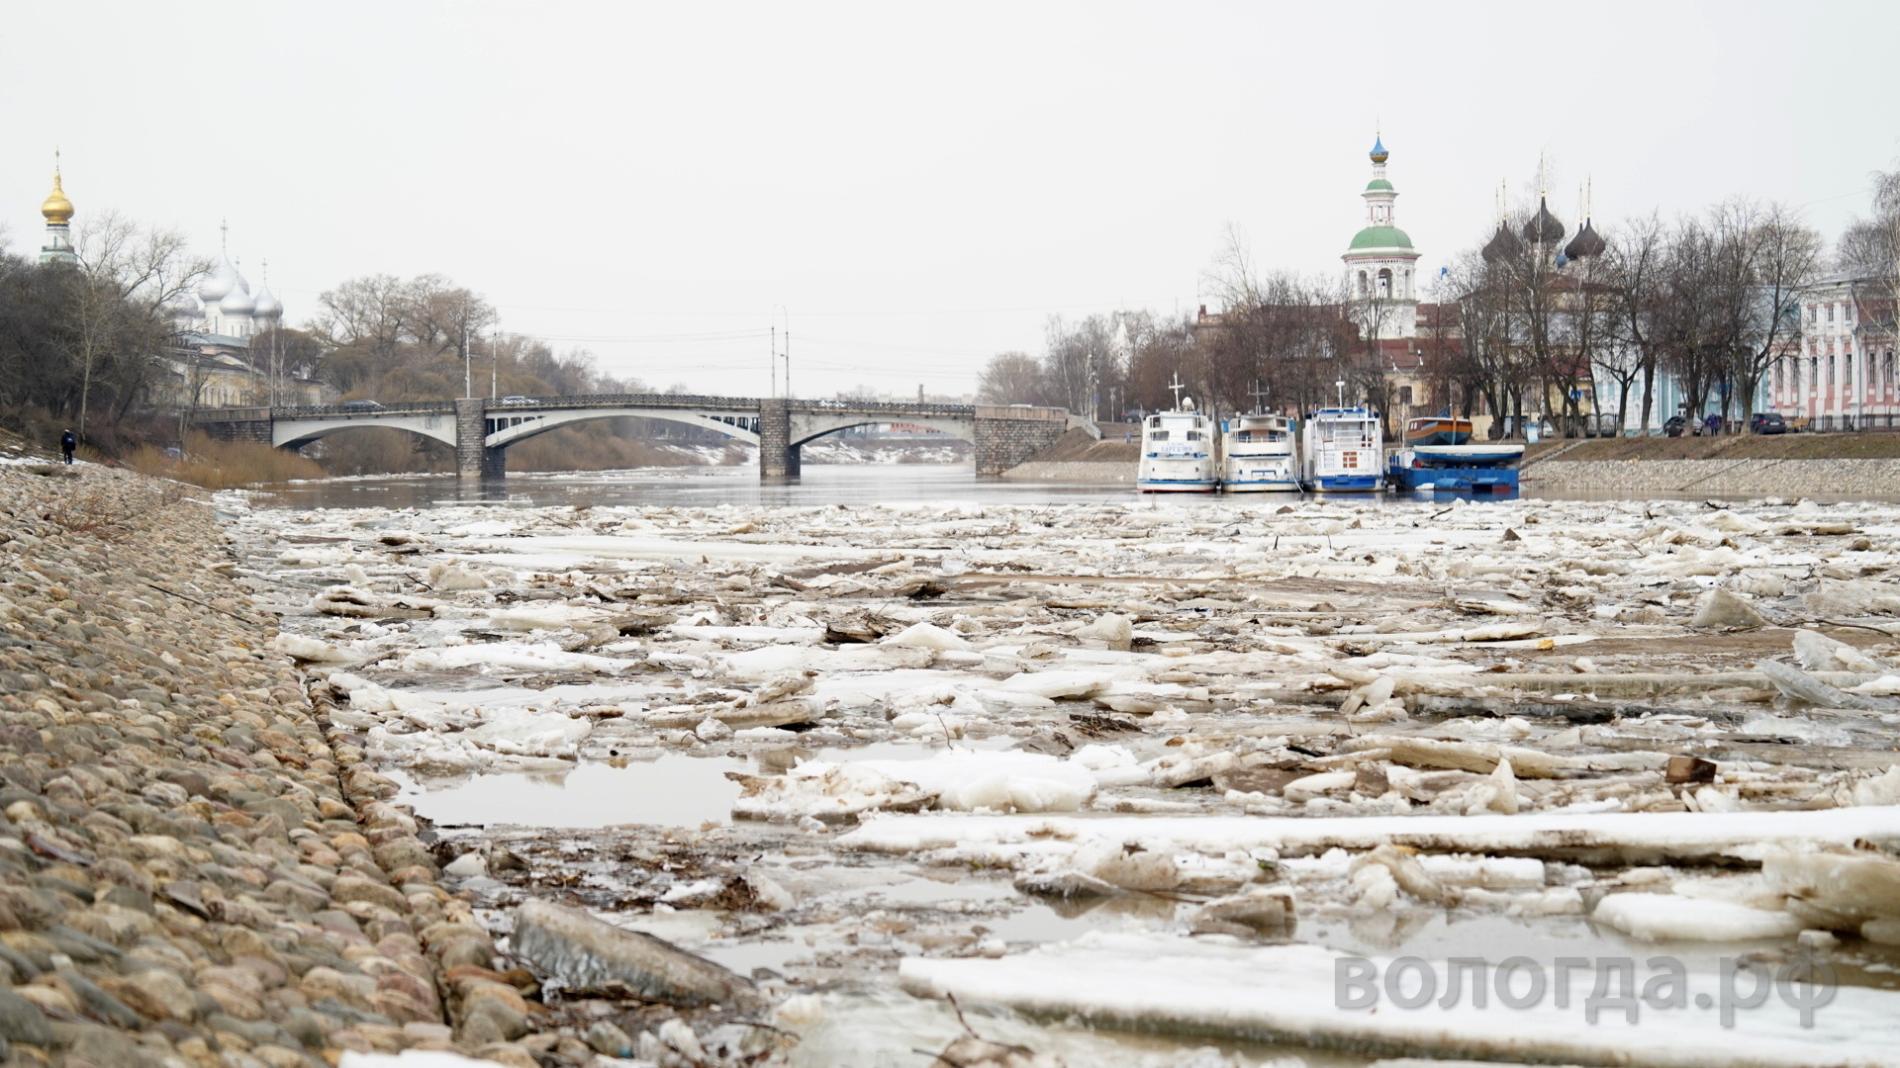 Уровень воды в реке Вологде сохраняется ниже критической отметки